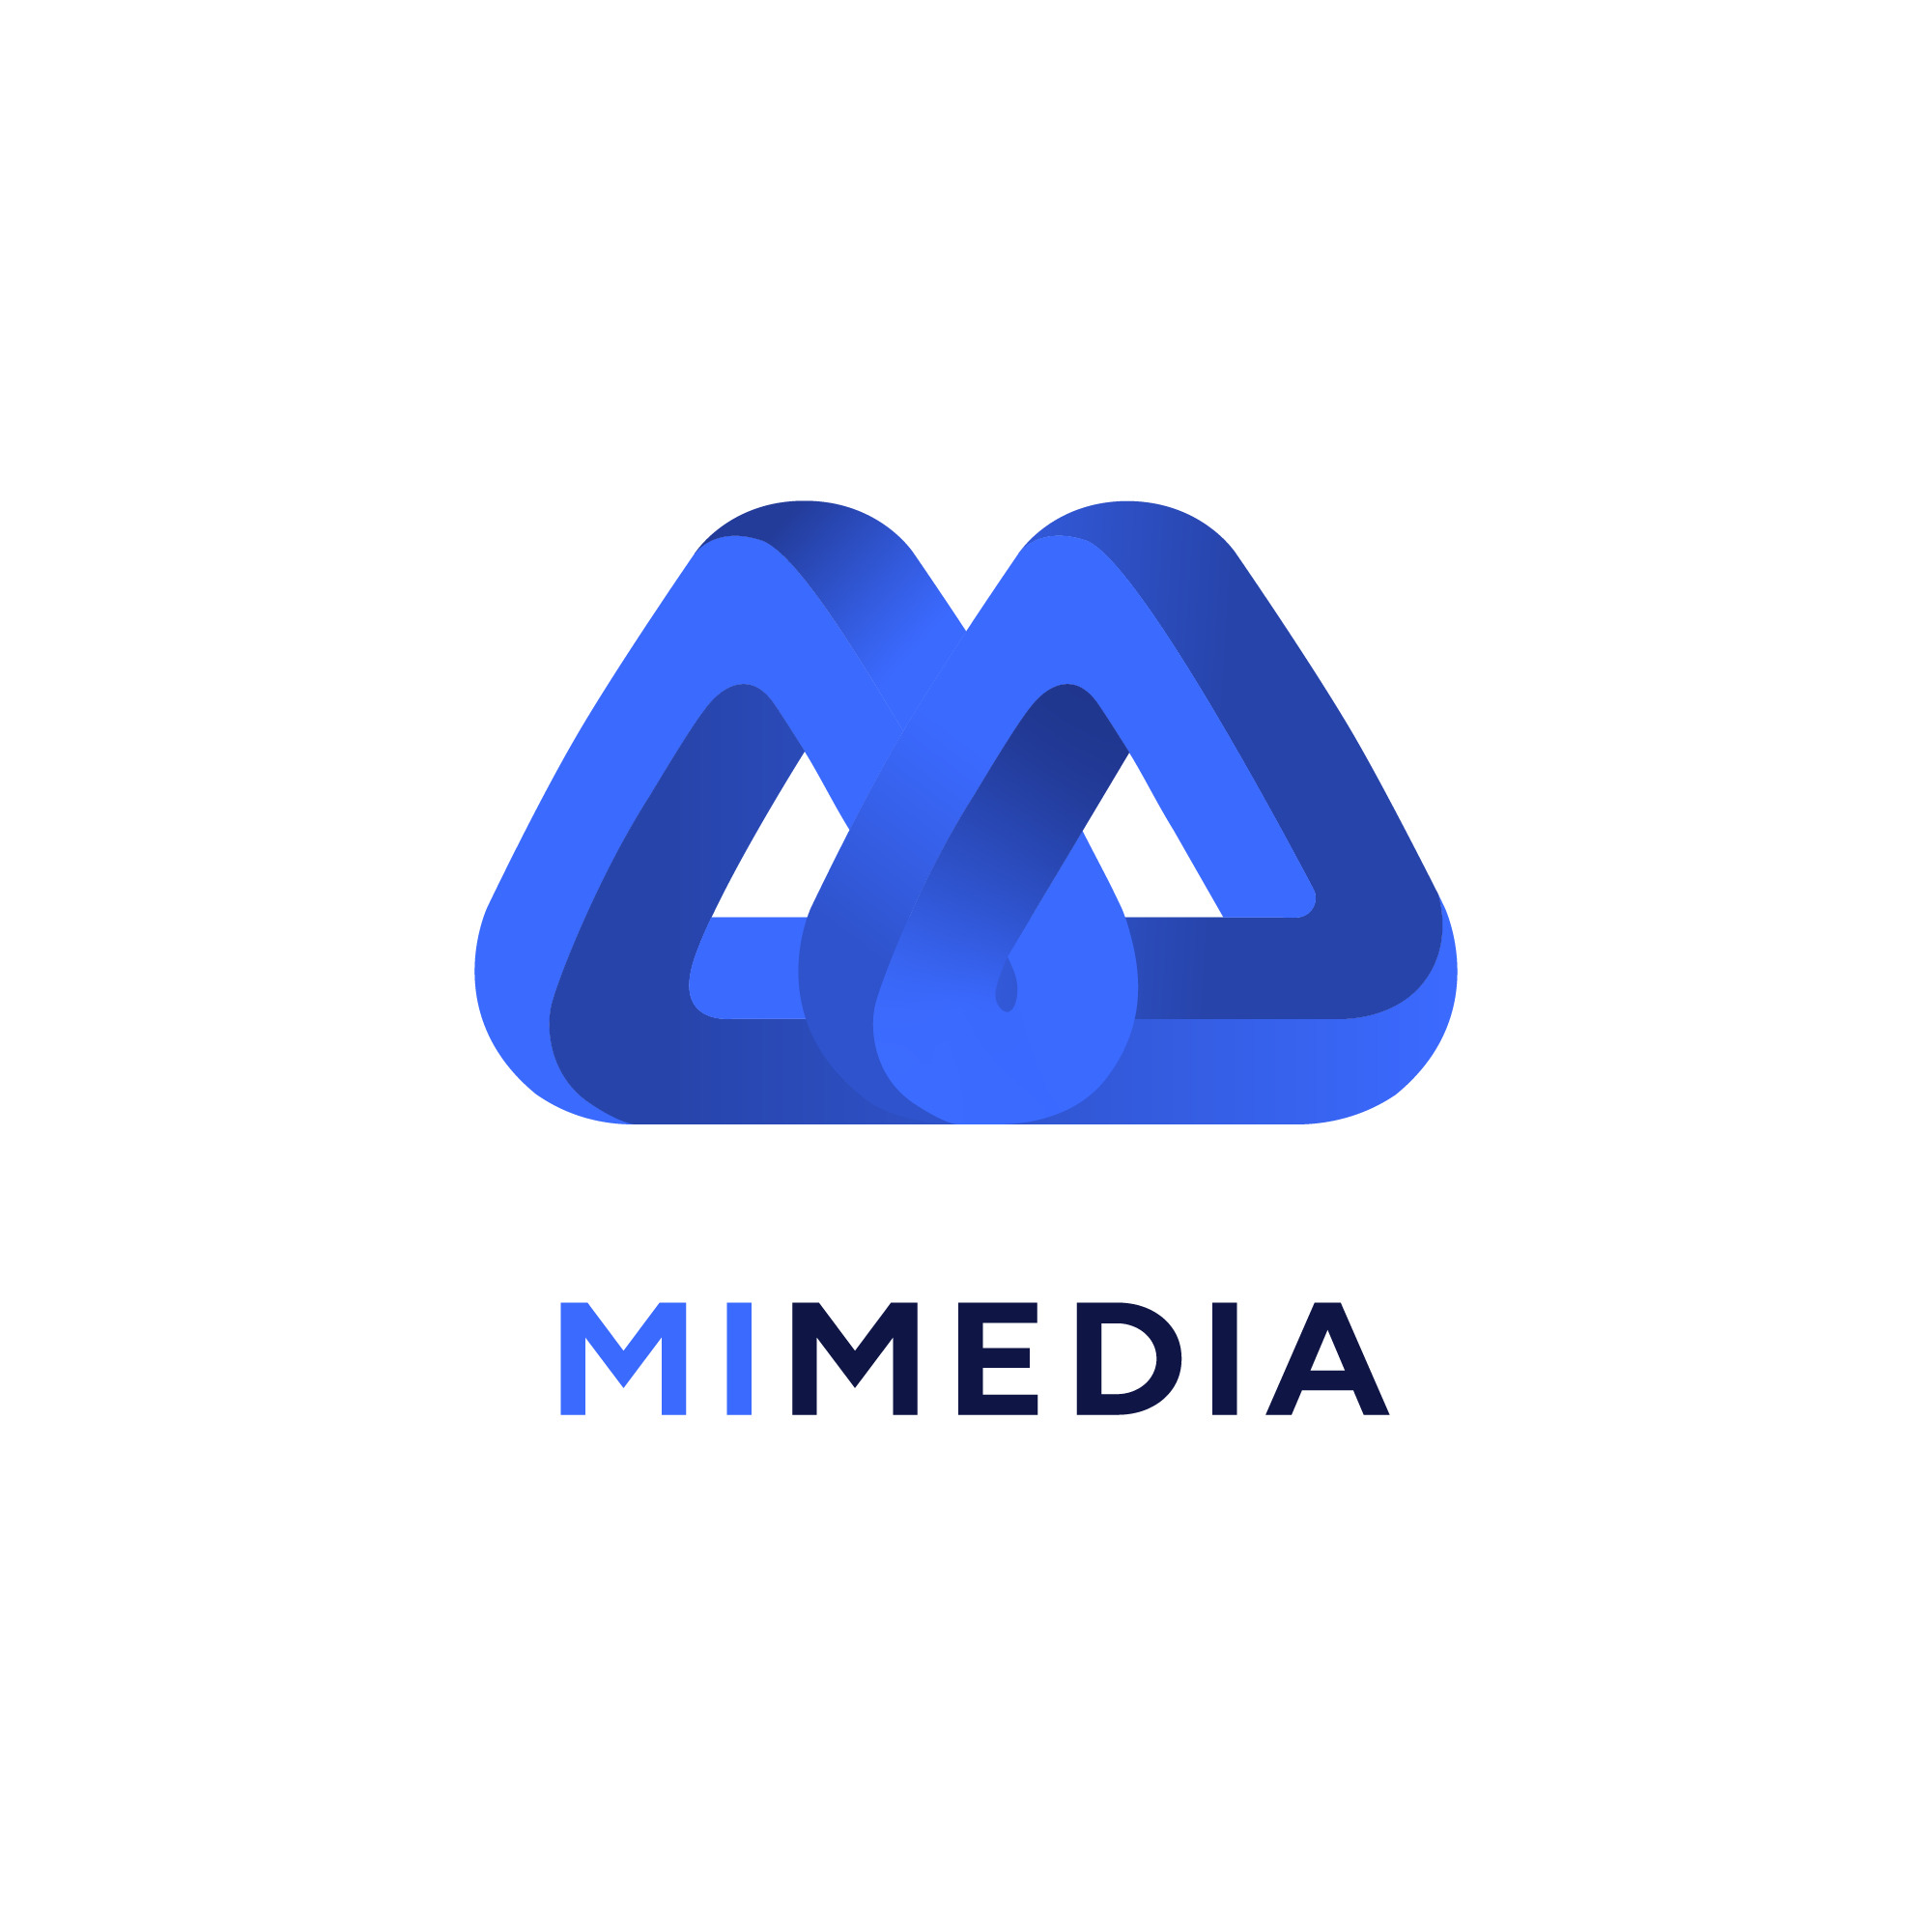 MI Media